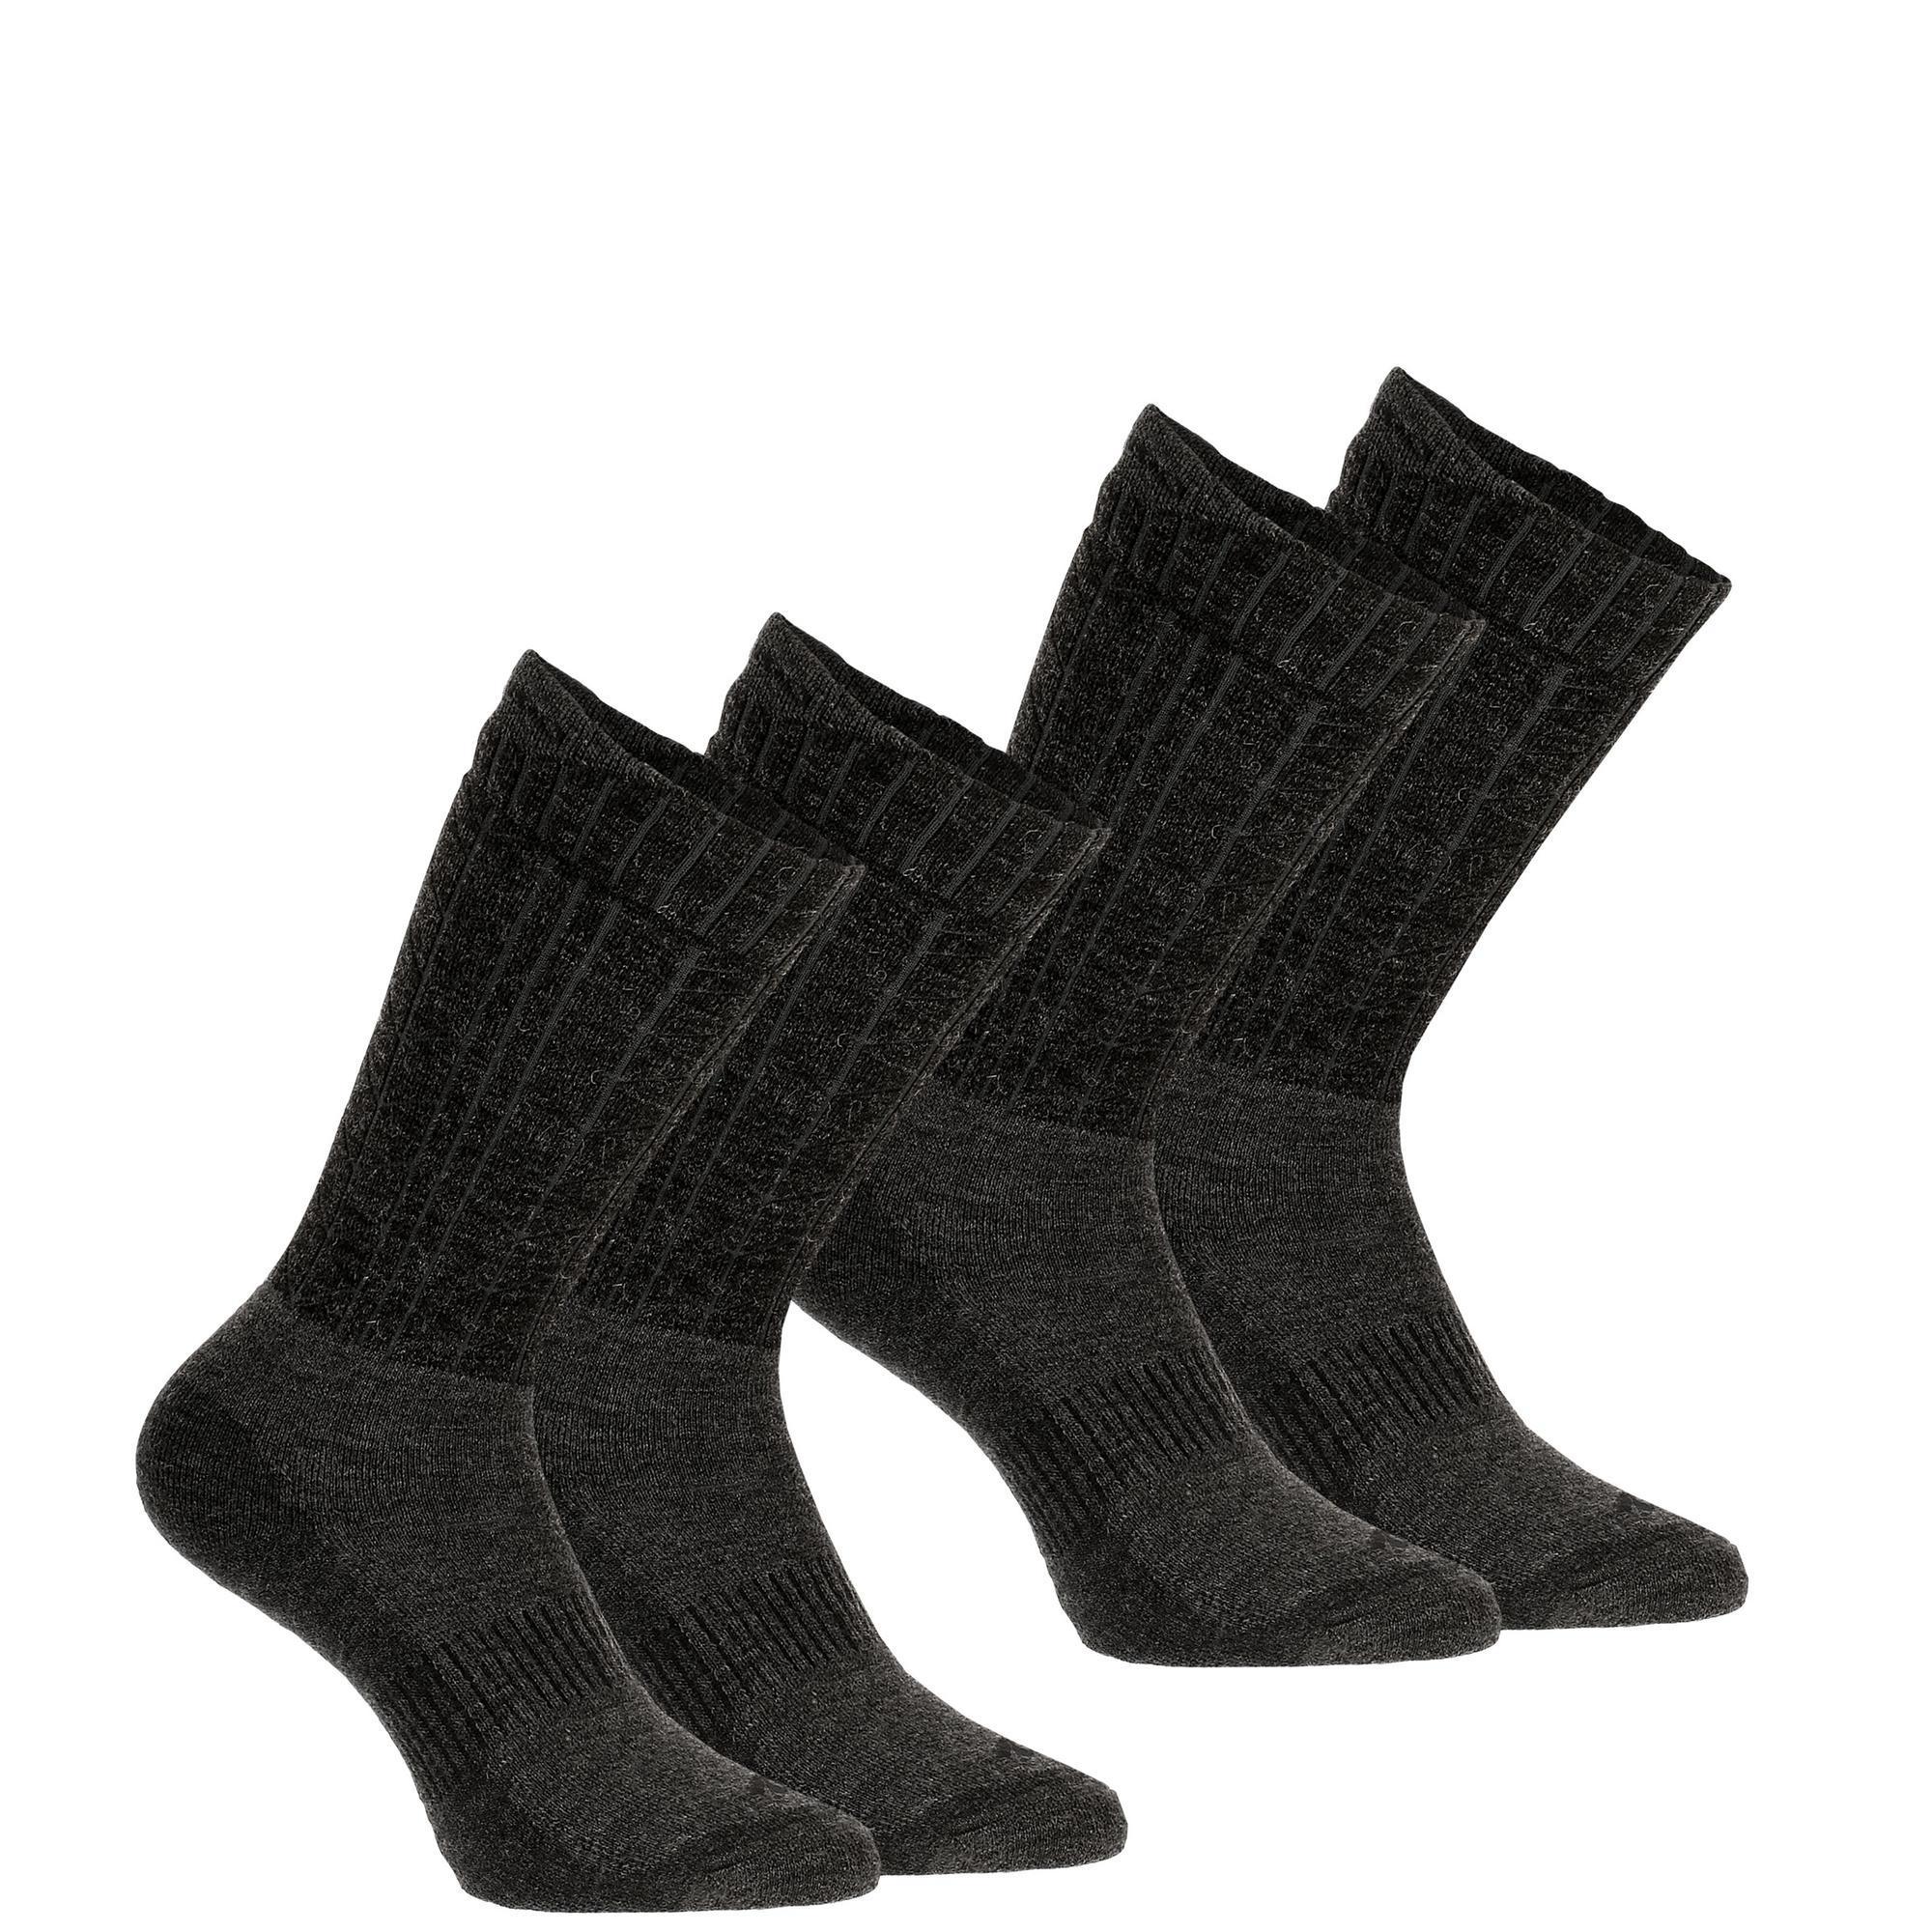 Adult's warm mid-height hiking socks 